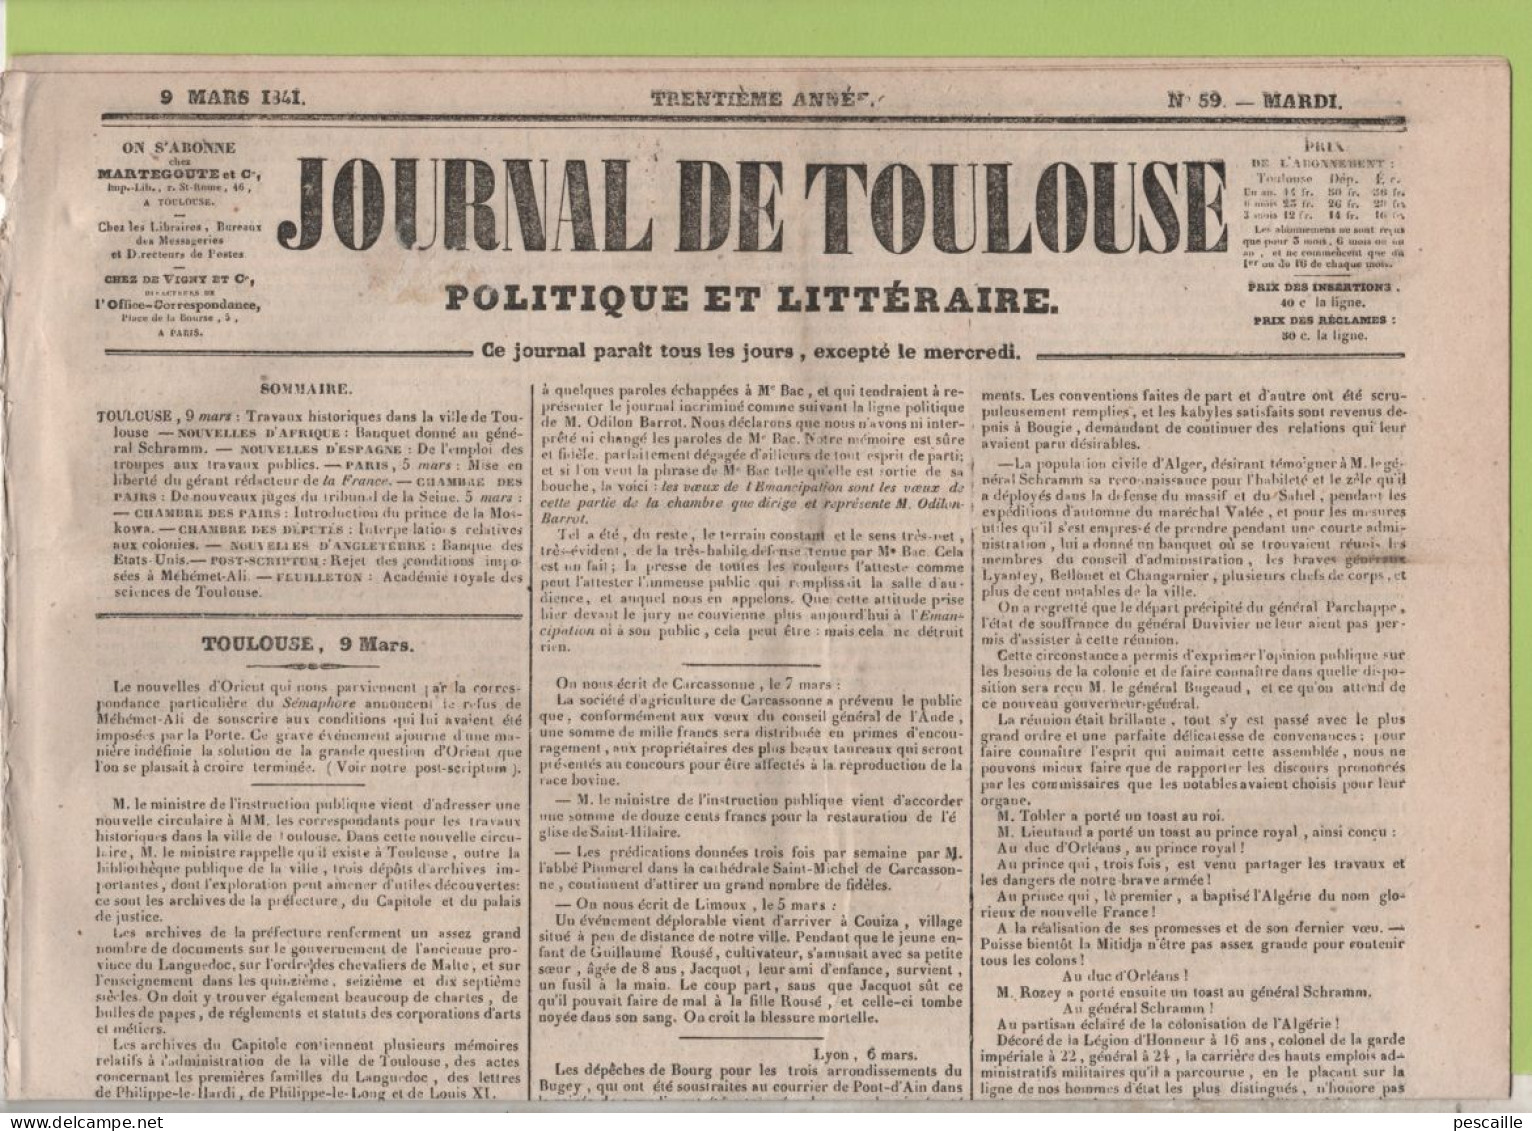 JOURNAL DE TOULOUSE 09 03 1841 - CARCASSONNE - COUIZA - ALGER / BOUGIE - MORT DE BERTRAND BARRERE - ALEXANDRIE - MALTE - 1800 - 1849